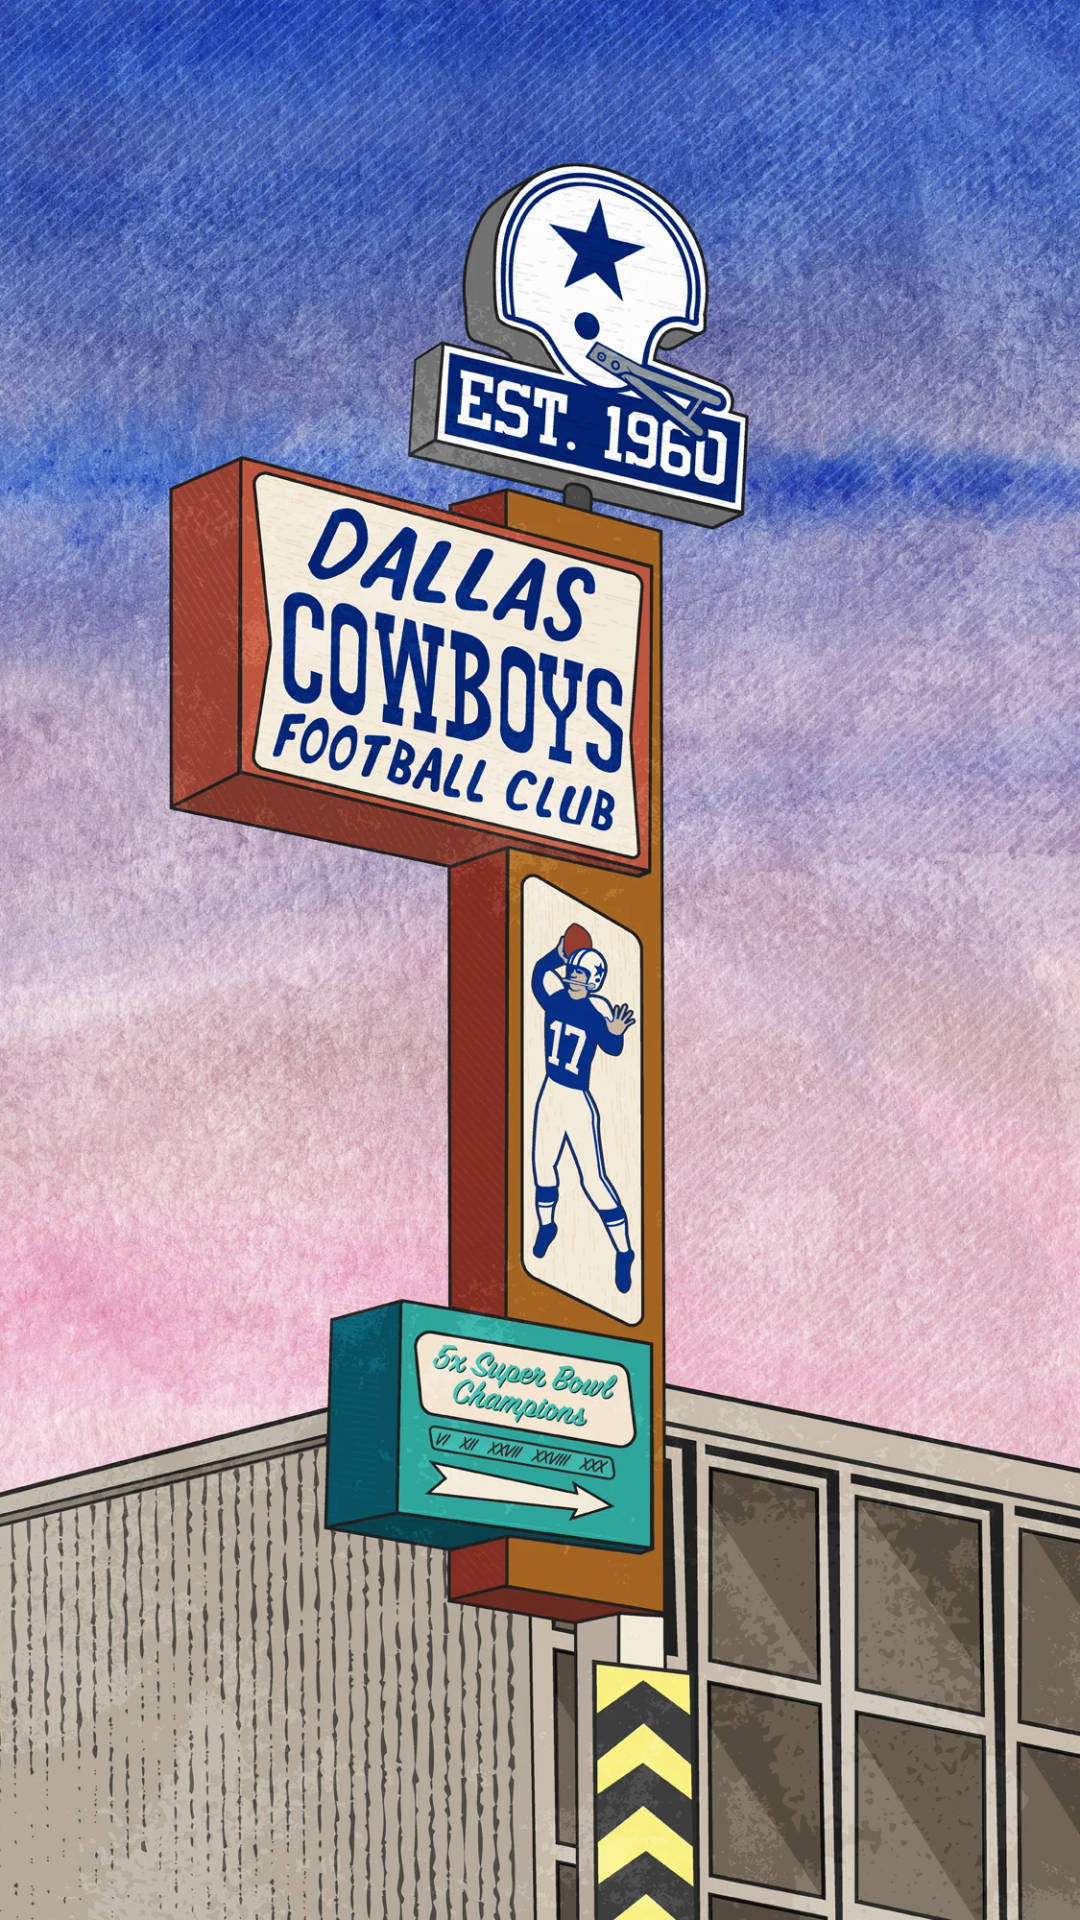 Letrasdo Prédio Dos Dallas Cowboys. Papel de Parede